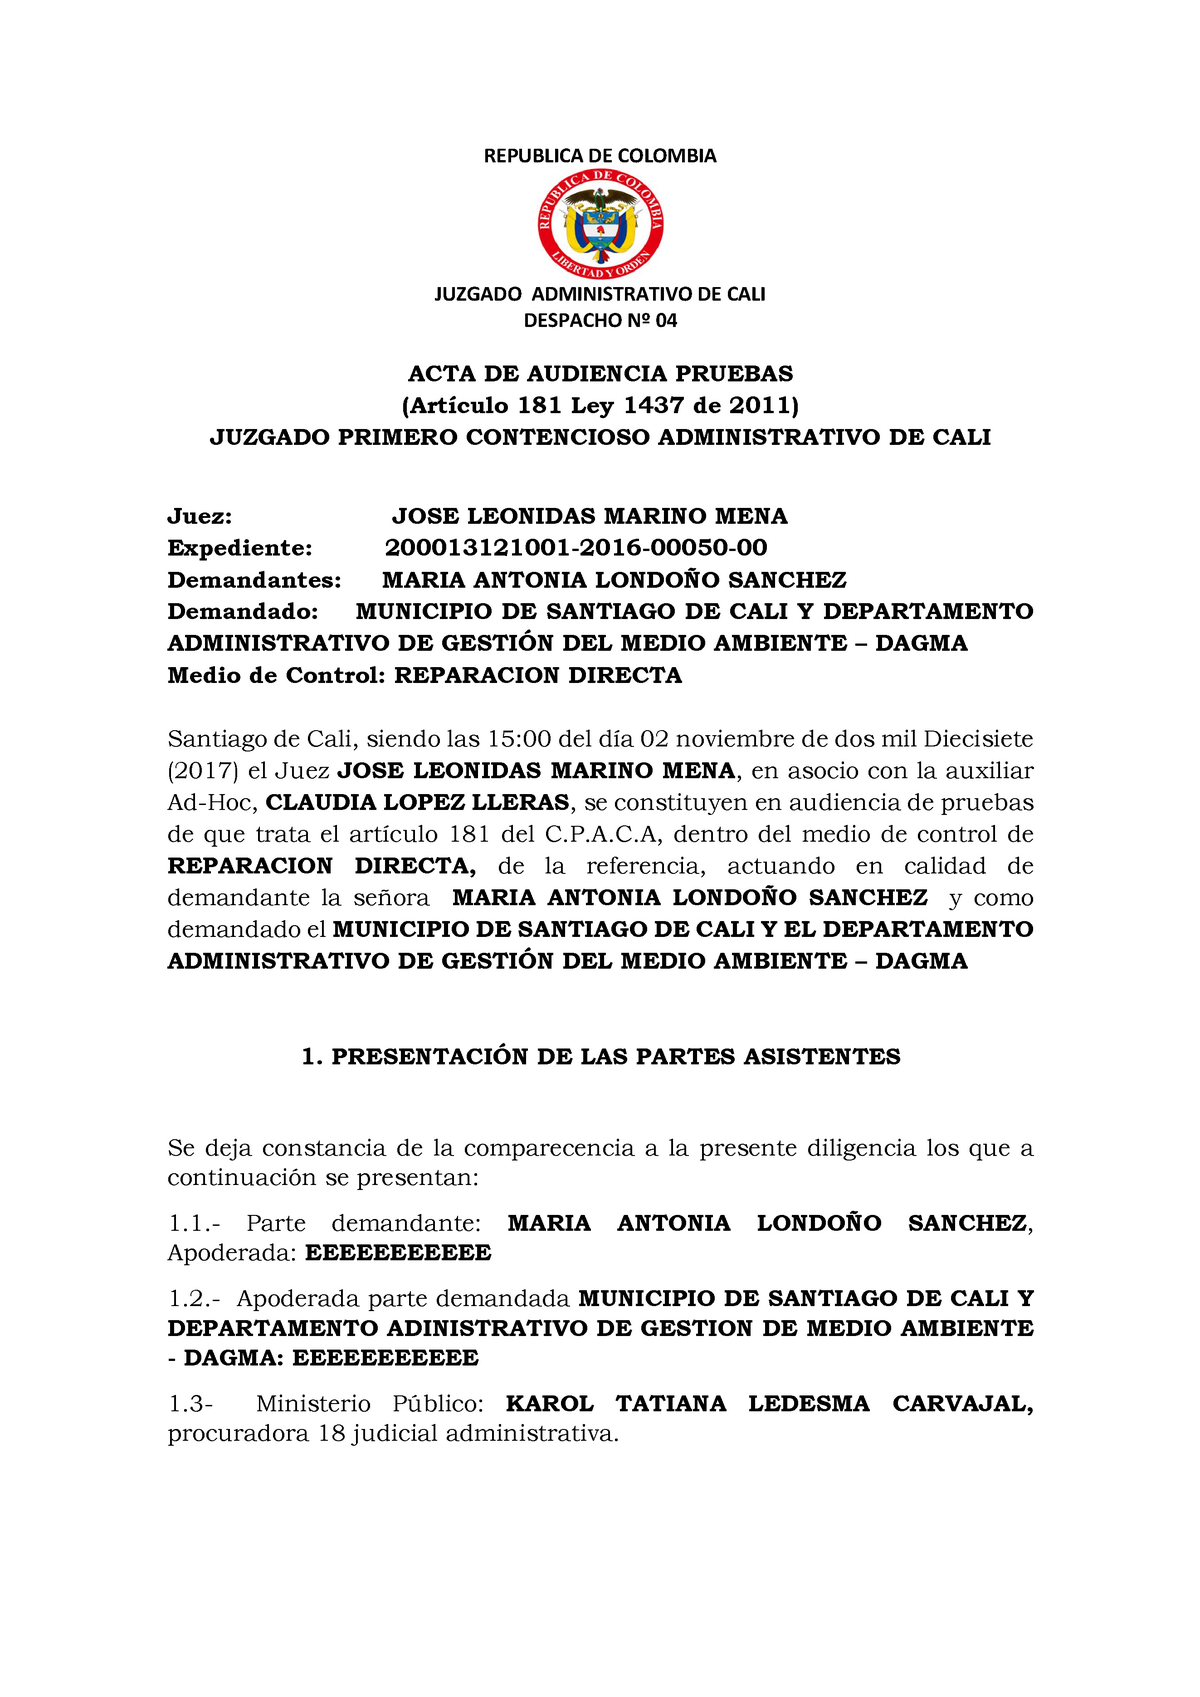 Modelo Acta de Audiencia de Pruebas - Repaaracion Directa - REPUBLICA DE  COLOMBIA JUZGADO - Studocu